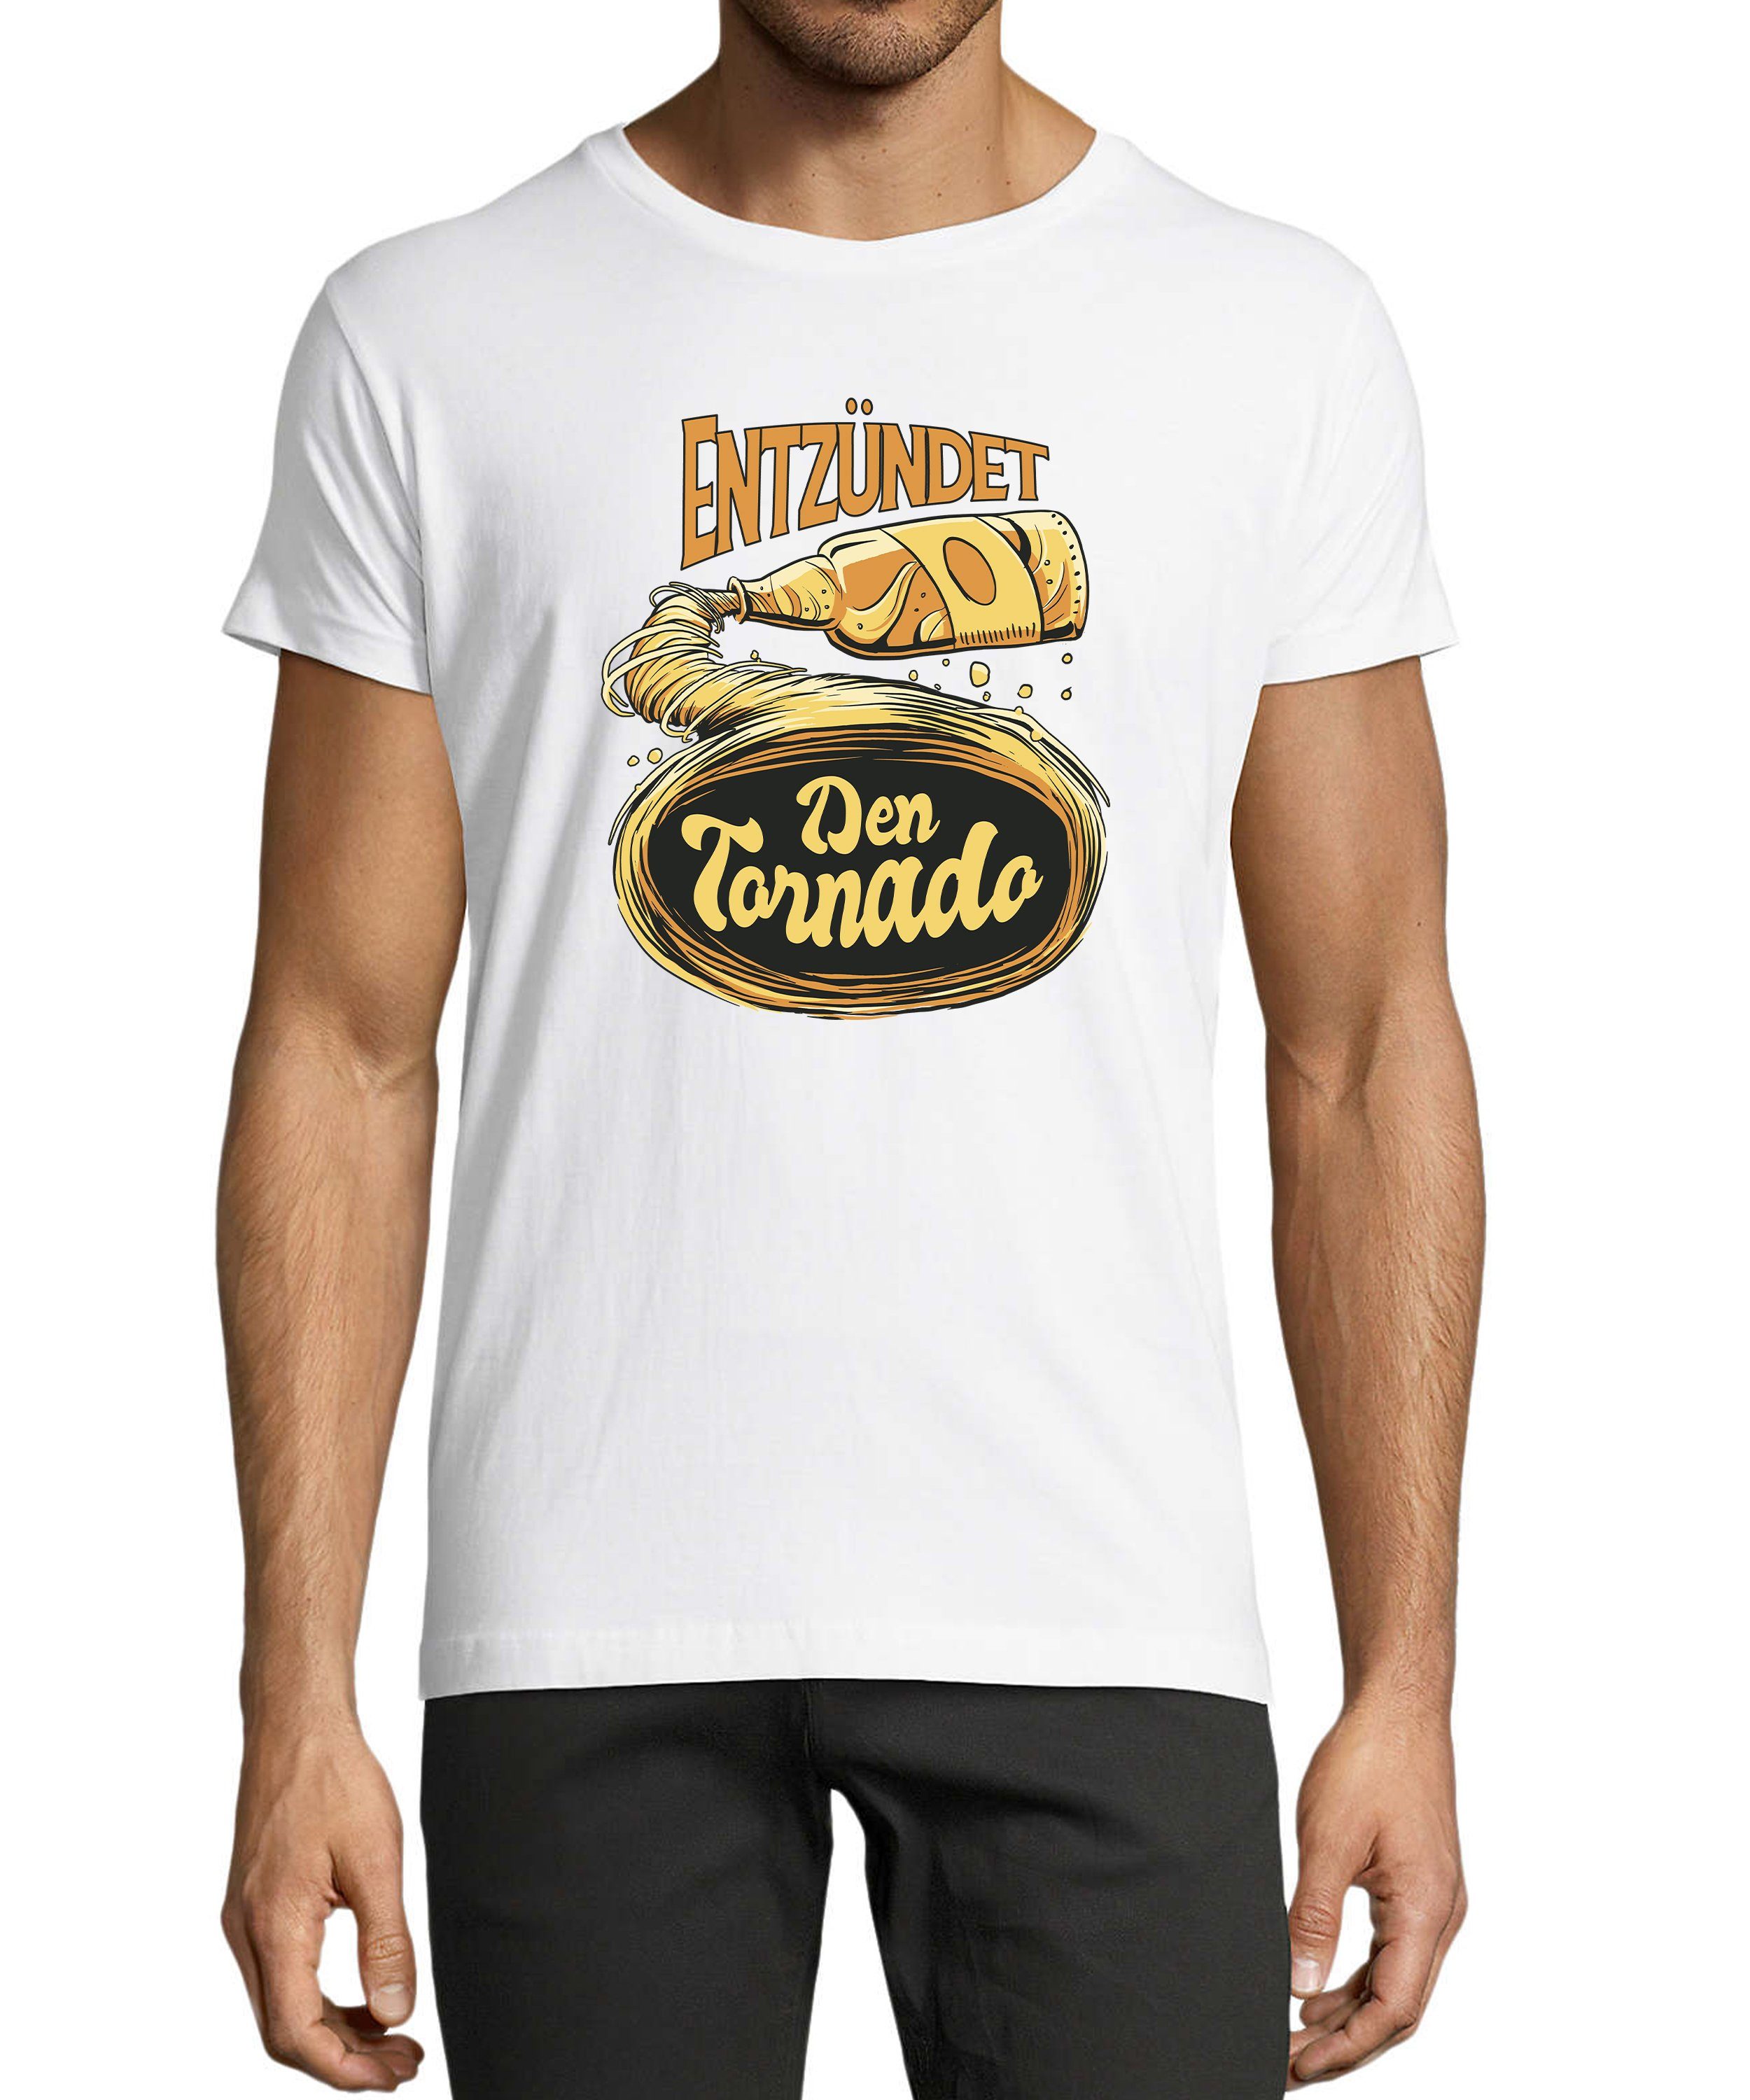 MyDesign24 T-Shirt Herren Fun Print Shirt - Oktoberfest Trinkshirt Entzündet den Tornado Baumwollshirt mit Aufdruck Regular Fit, i302 weiss